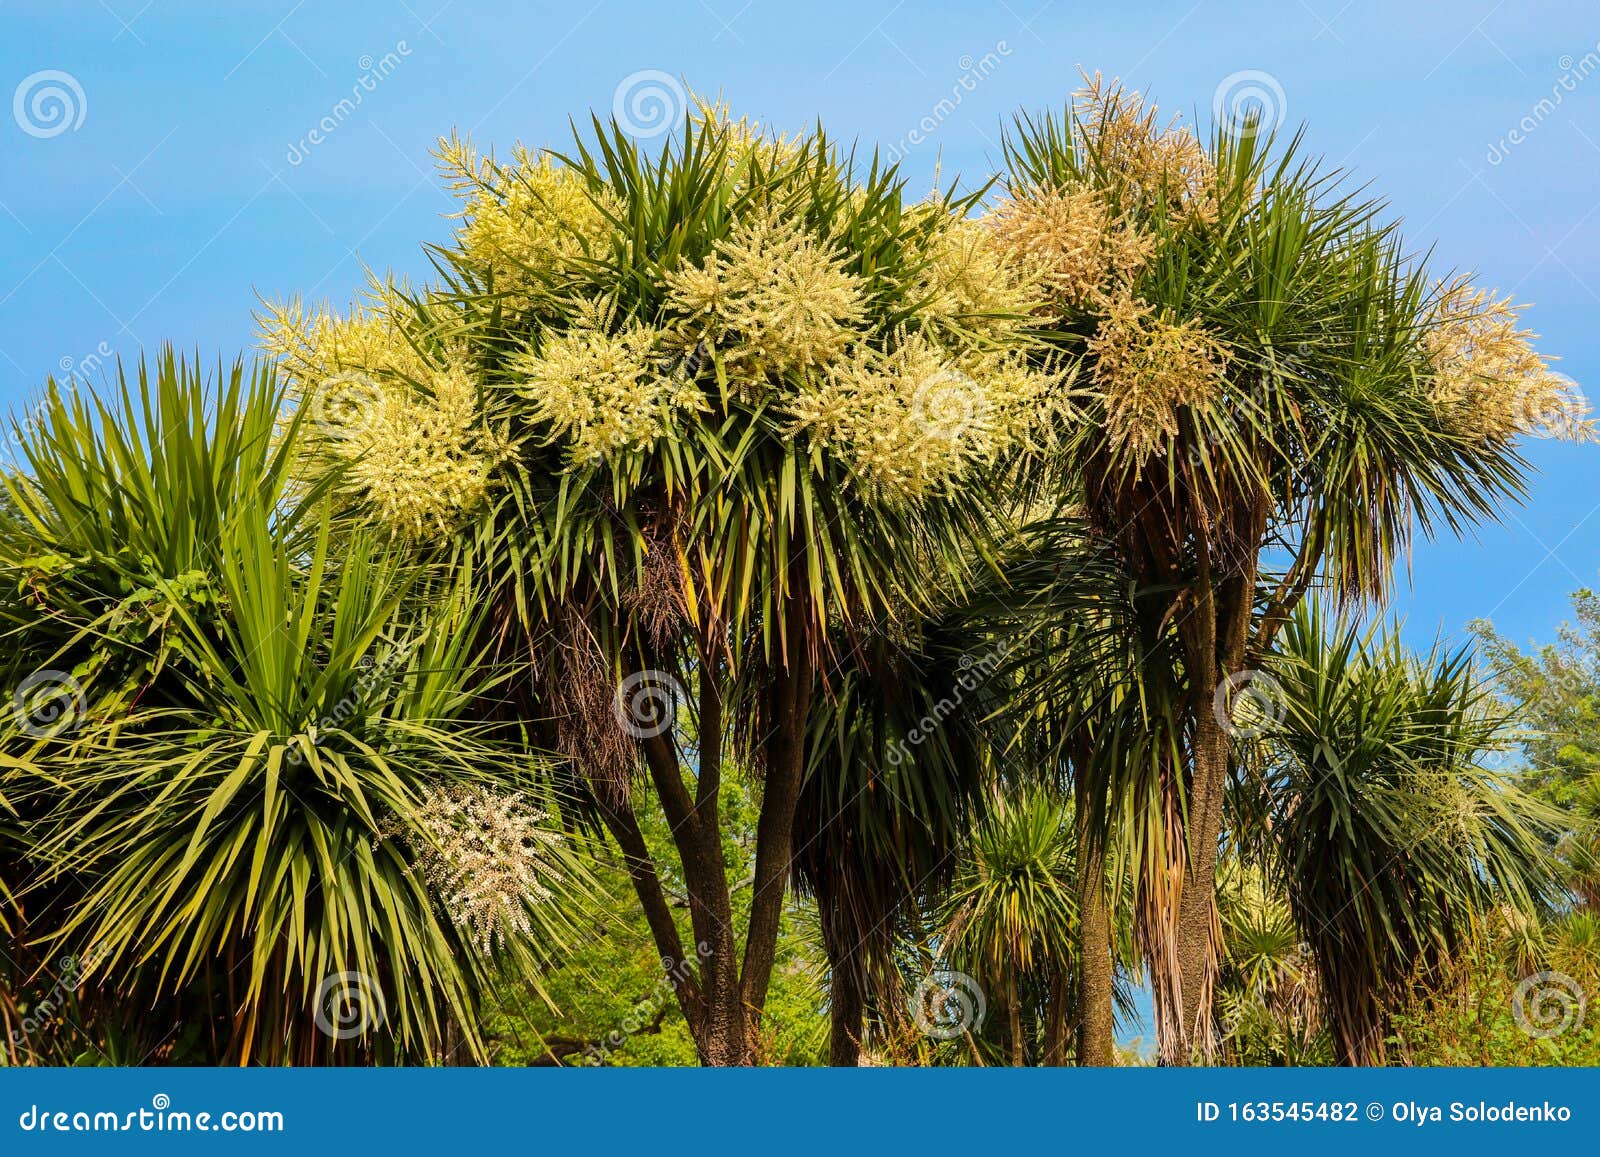 TÌNH YÊU CÂY CỎ ĐV4 - Page 82 Blooming-cordyline-australis-trees-cabbage-tree-palm-park-163545482